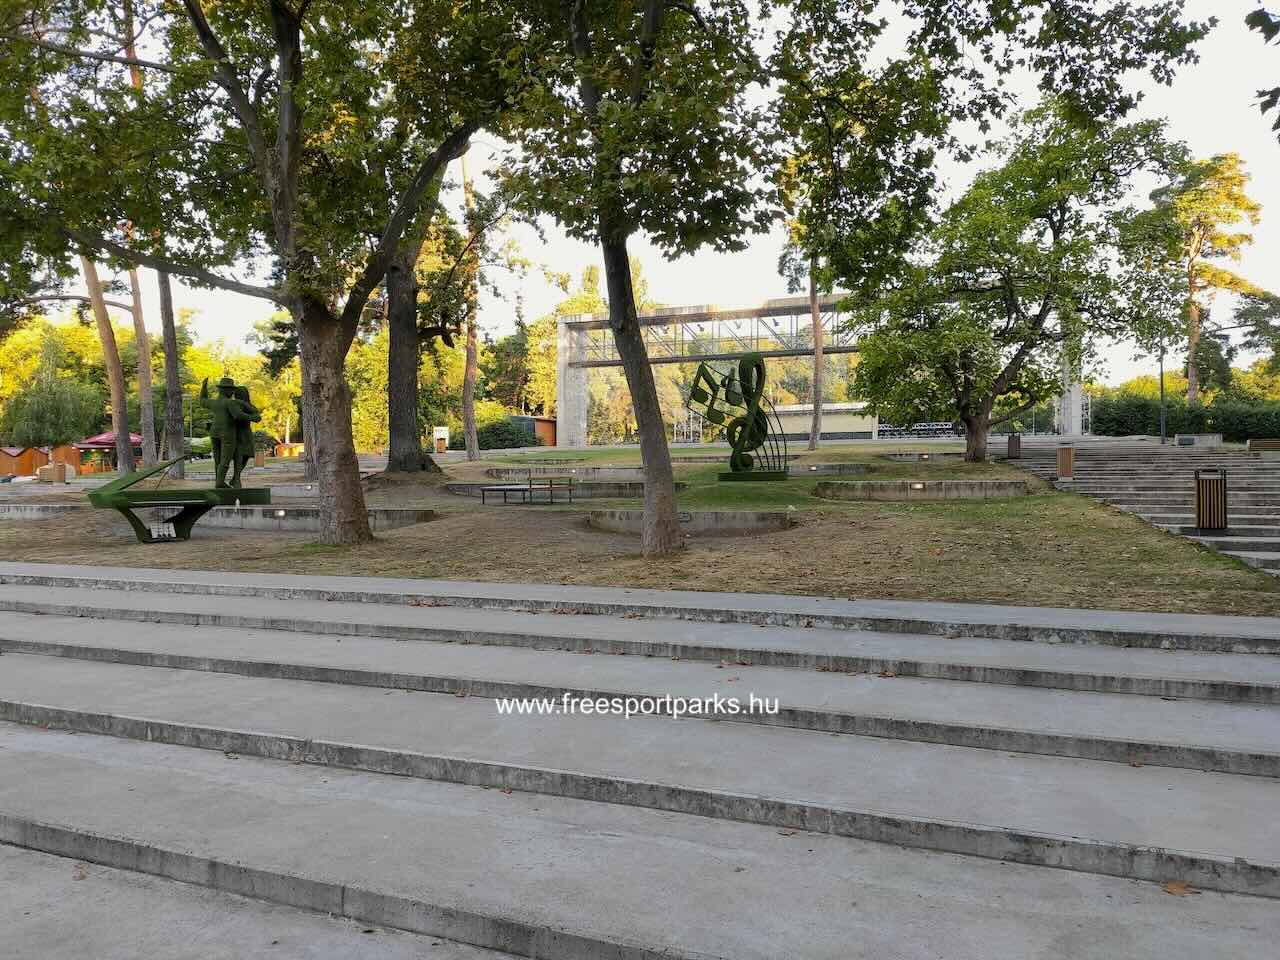 Nagyerdei Szabadtéri Színpad lépcsősora, ami közösségi tér is, Békás-tó, Debrecen - Free Sport Parks Blog